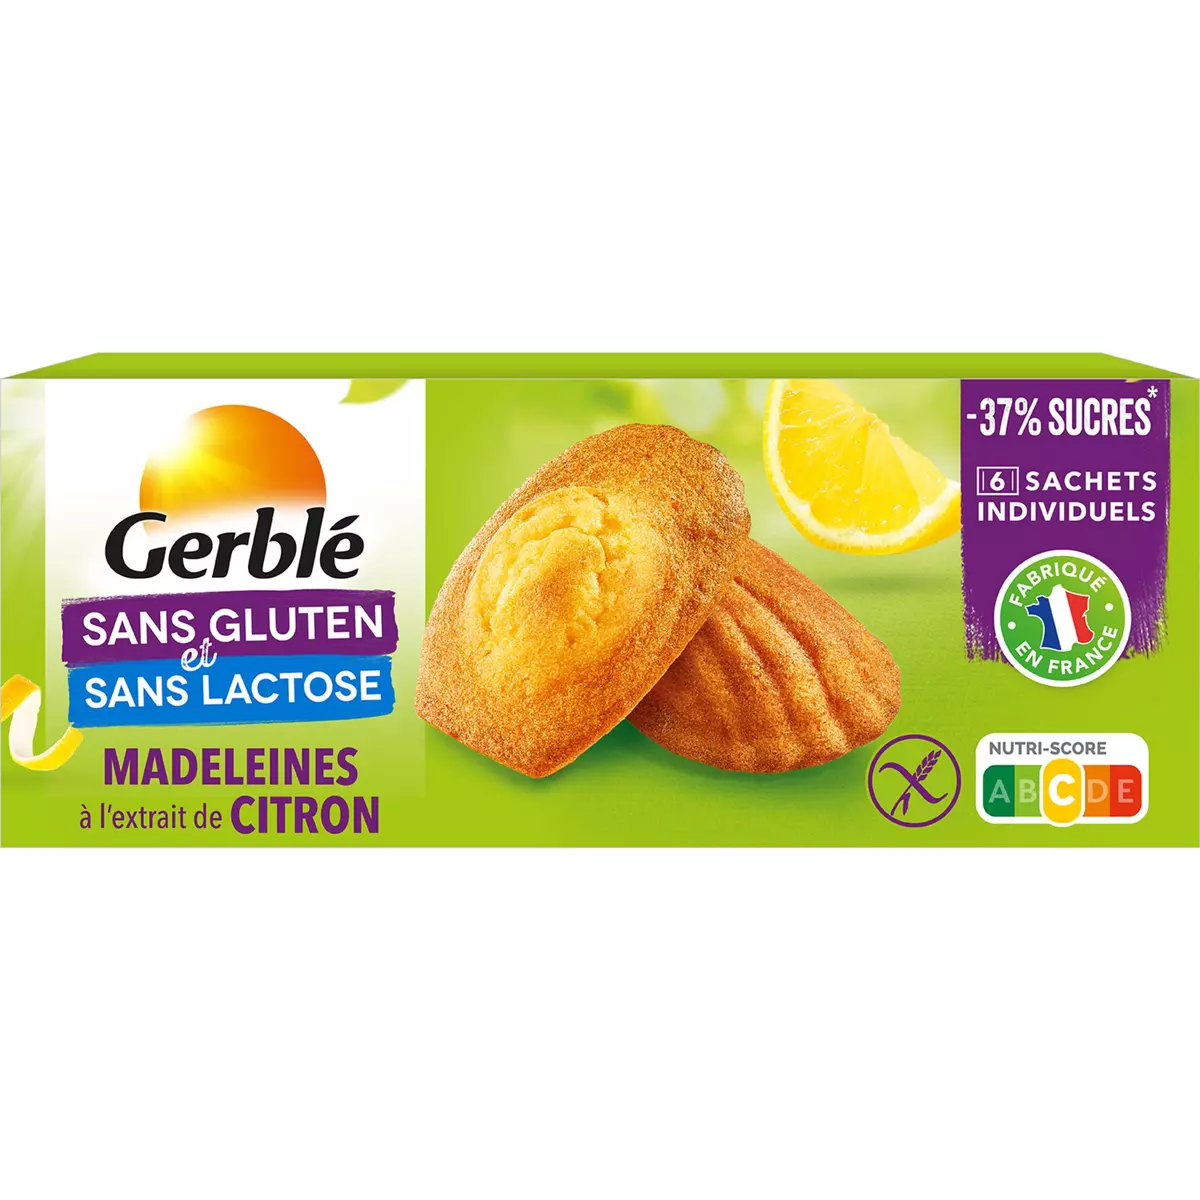 GERBLE SANS GLUTEN Madeleines à l'extrait de citron 6 sachets individuels 6 sachets 180g